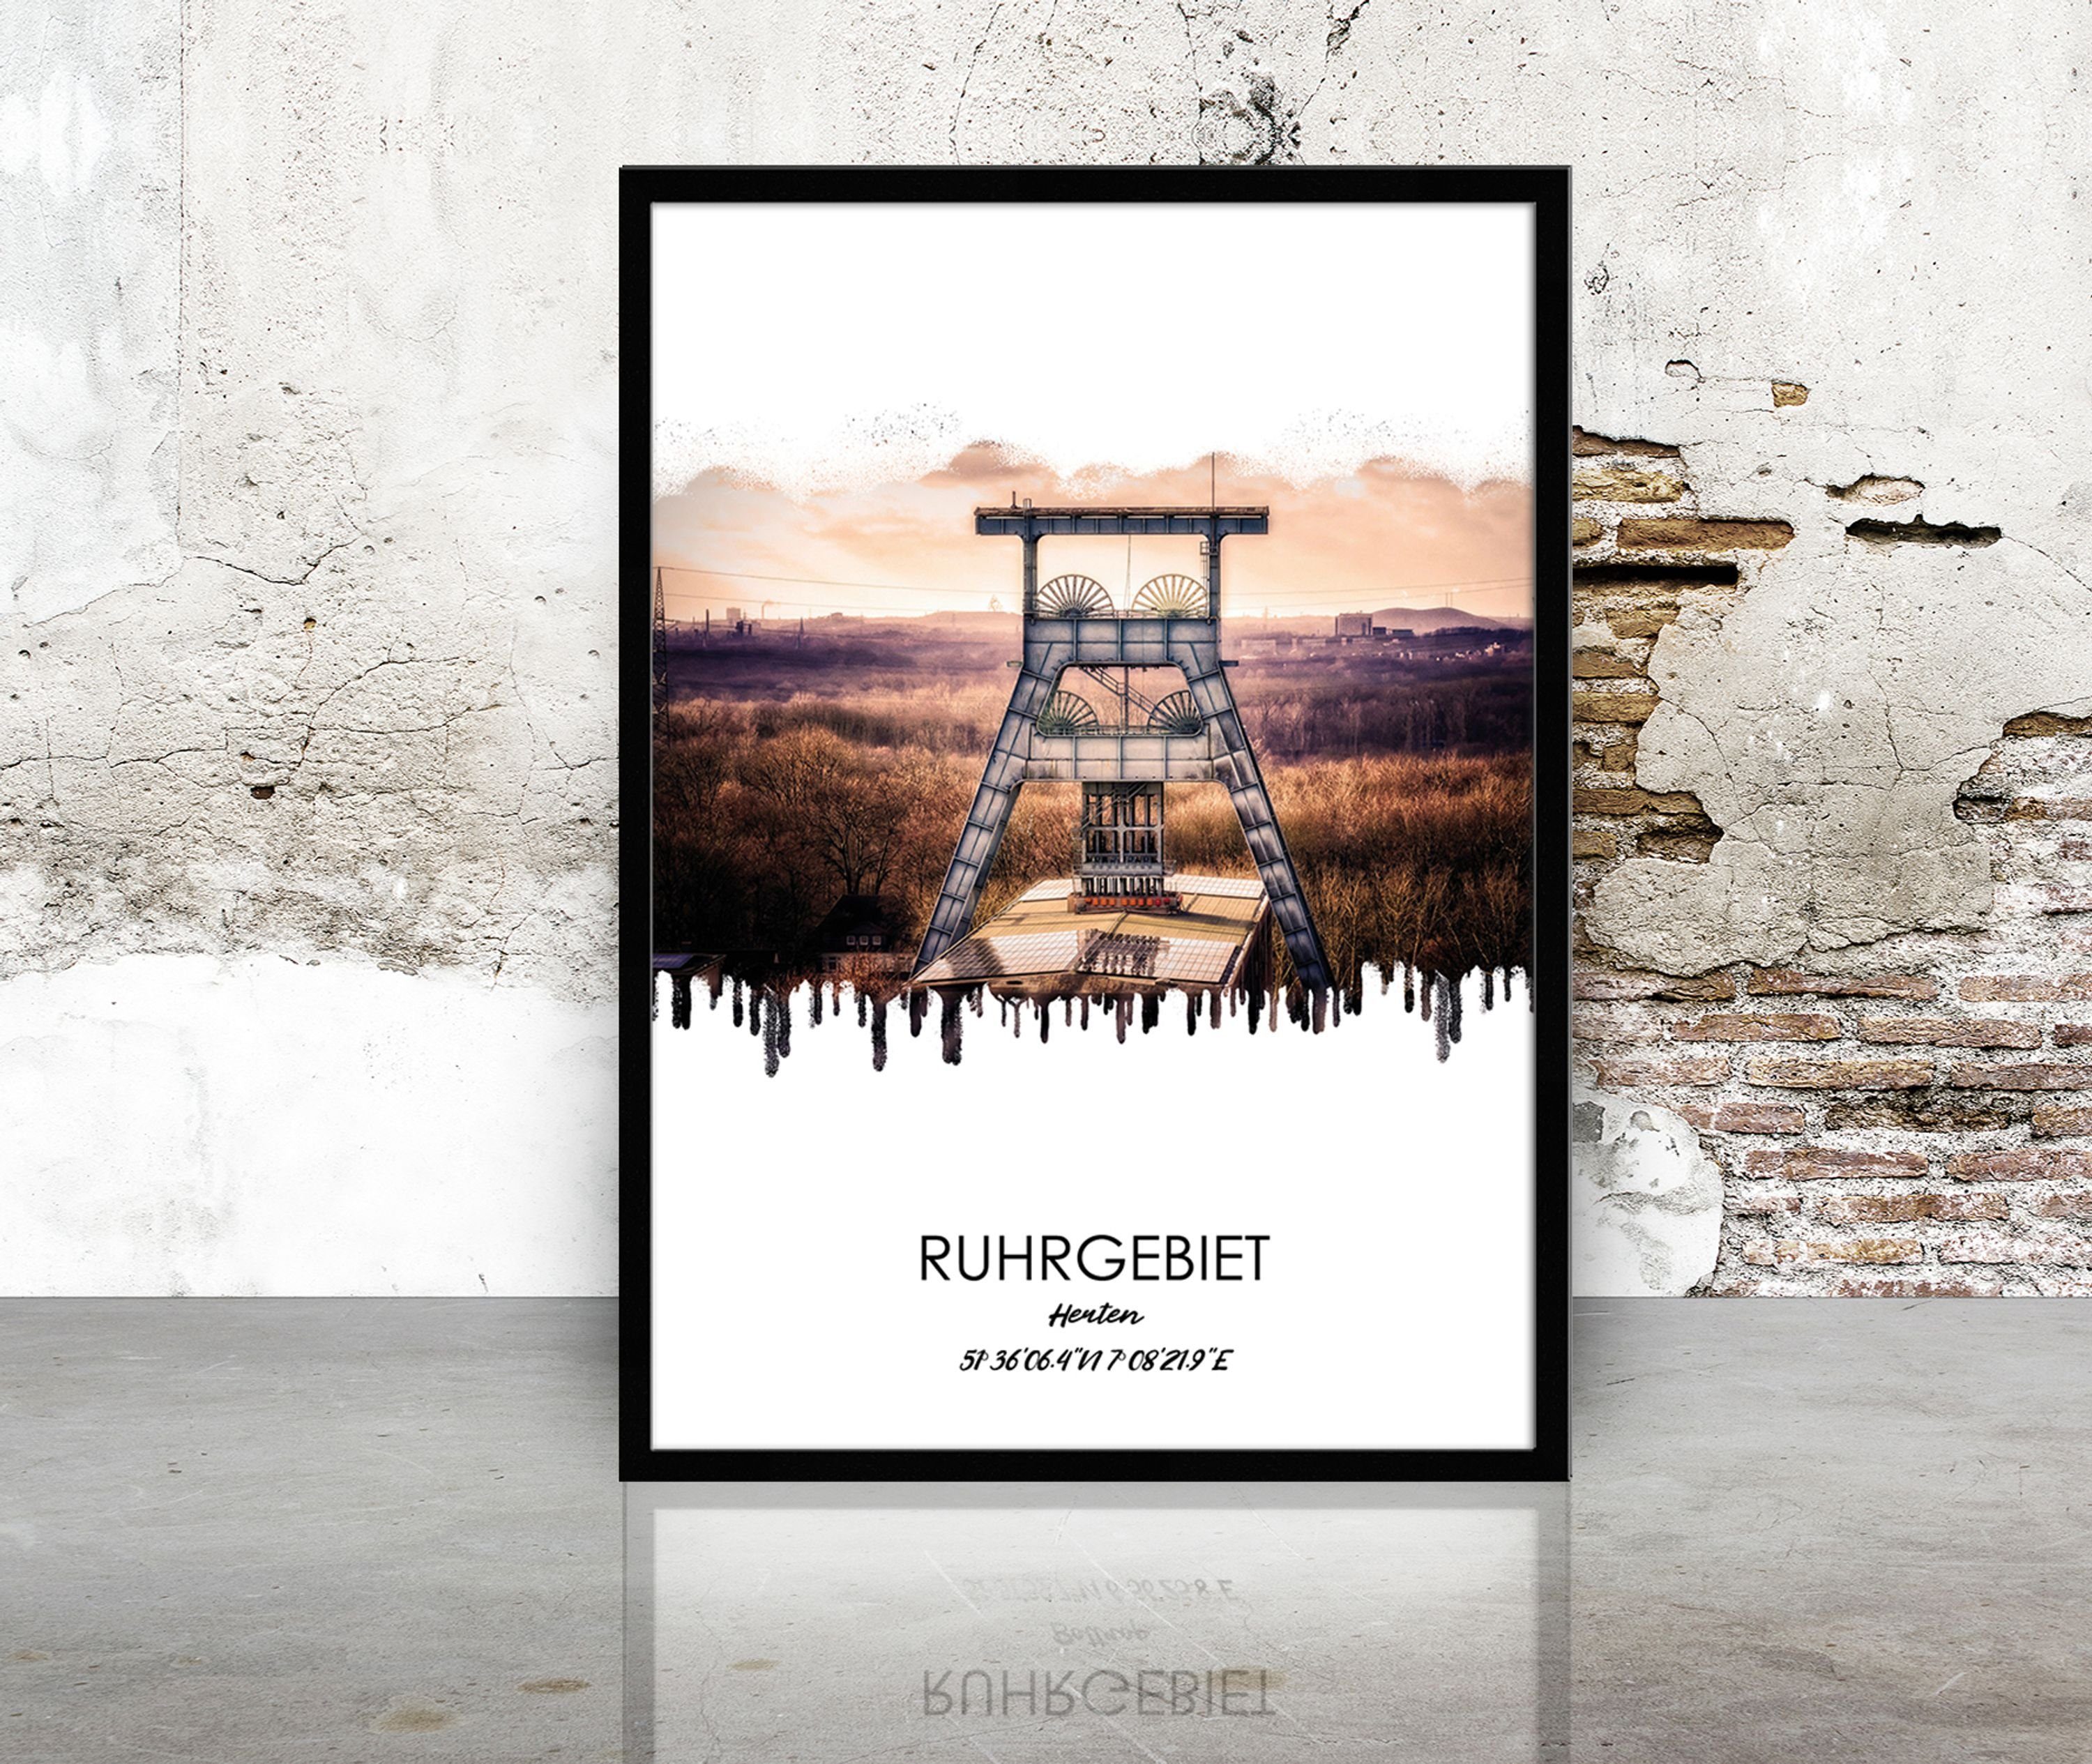 mit mit Rahmen Herten artissimo / / Bild gerahmt Ruhrgebiets-Städte: Ruhrgebiet Herten, Rahmen Bild Design-Poster 51x71cm